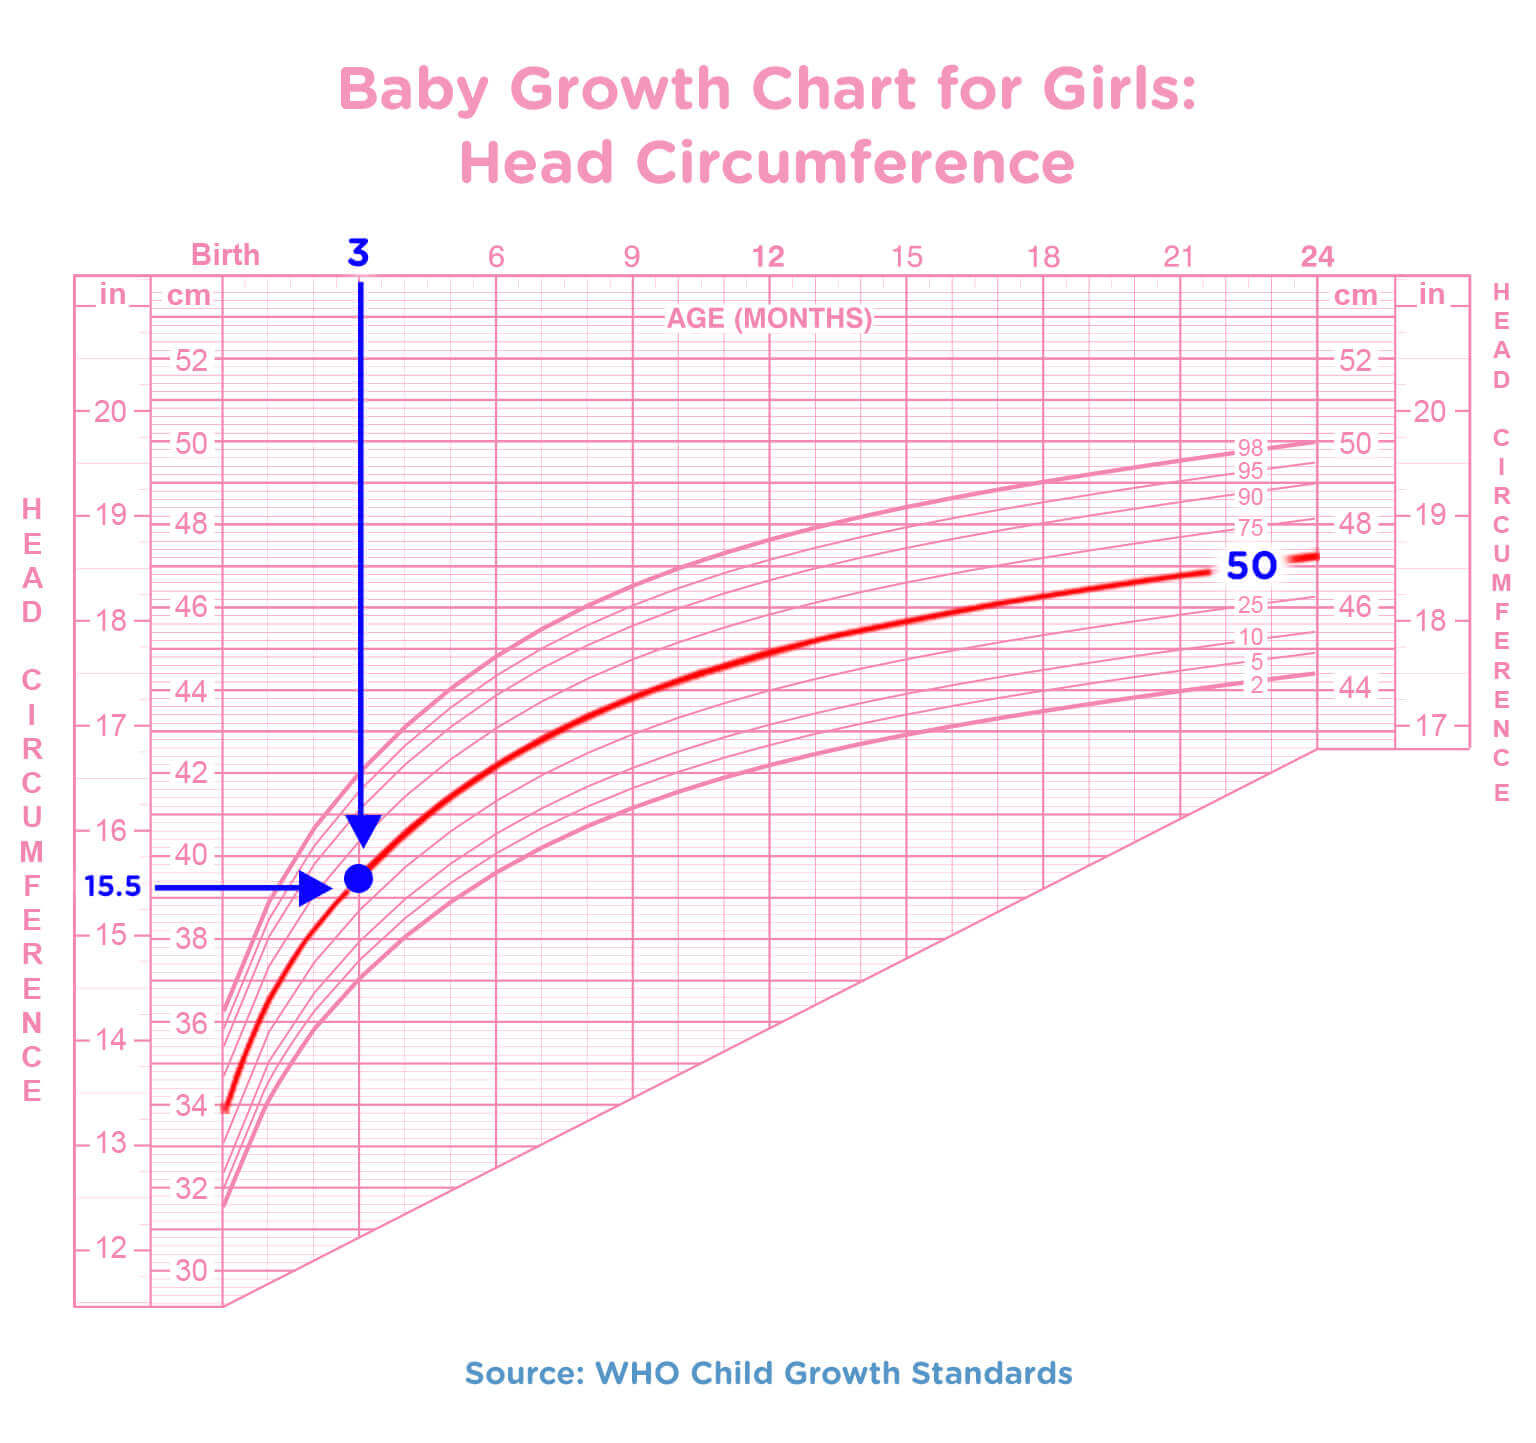 Newborn And Chart